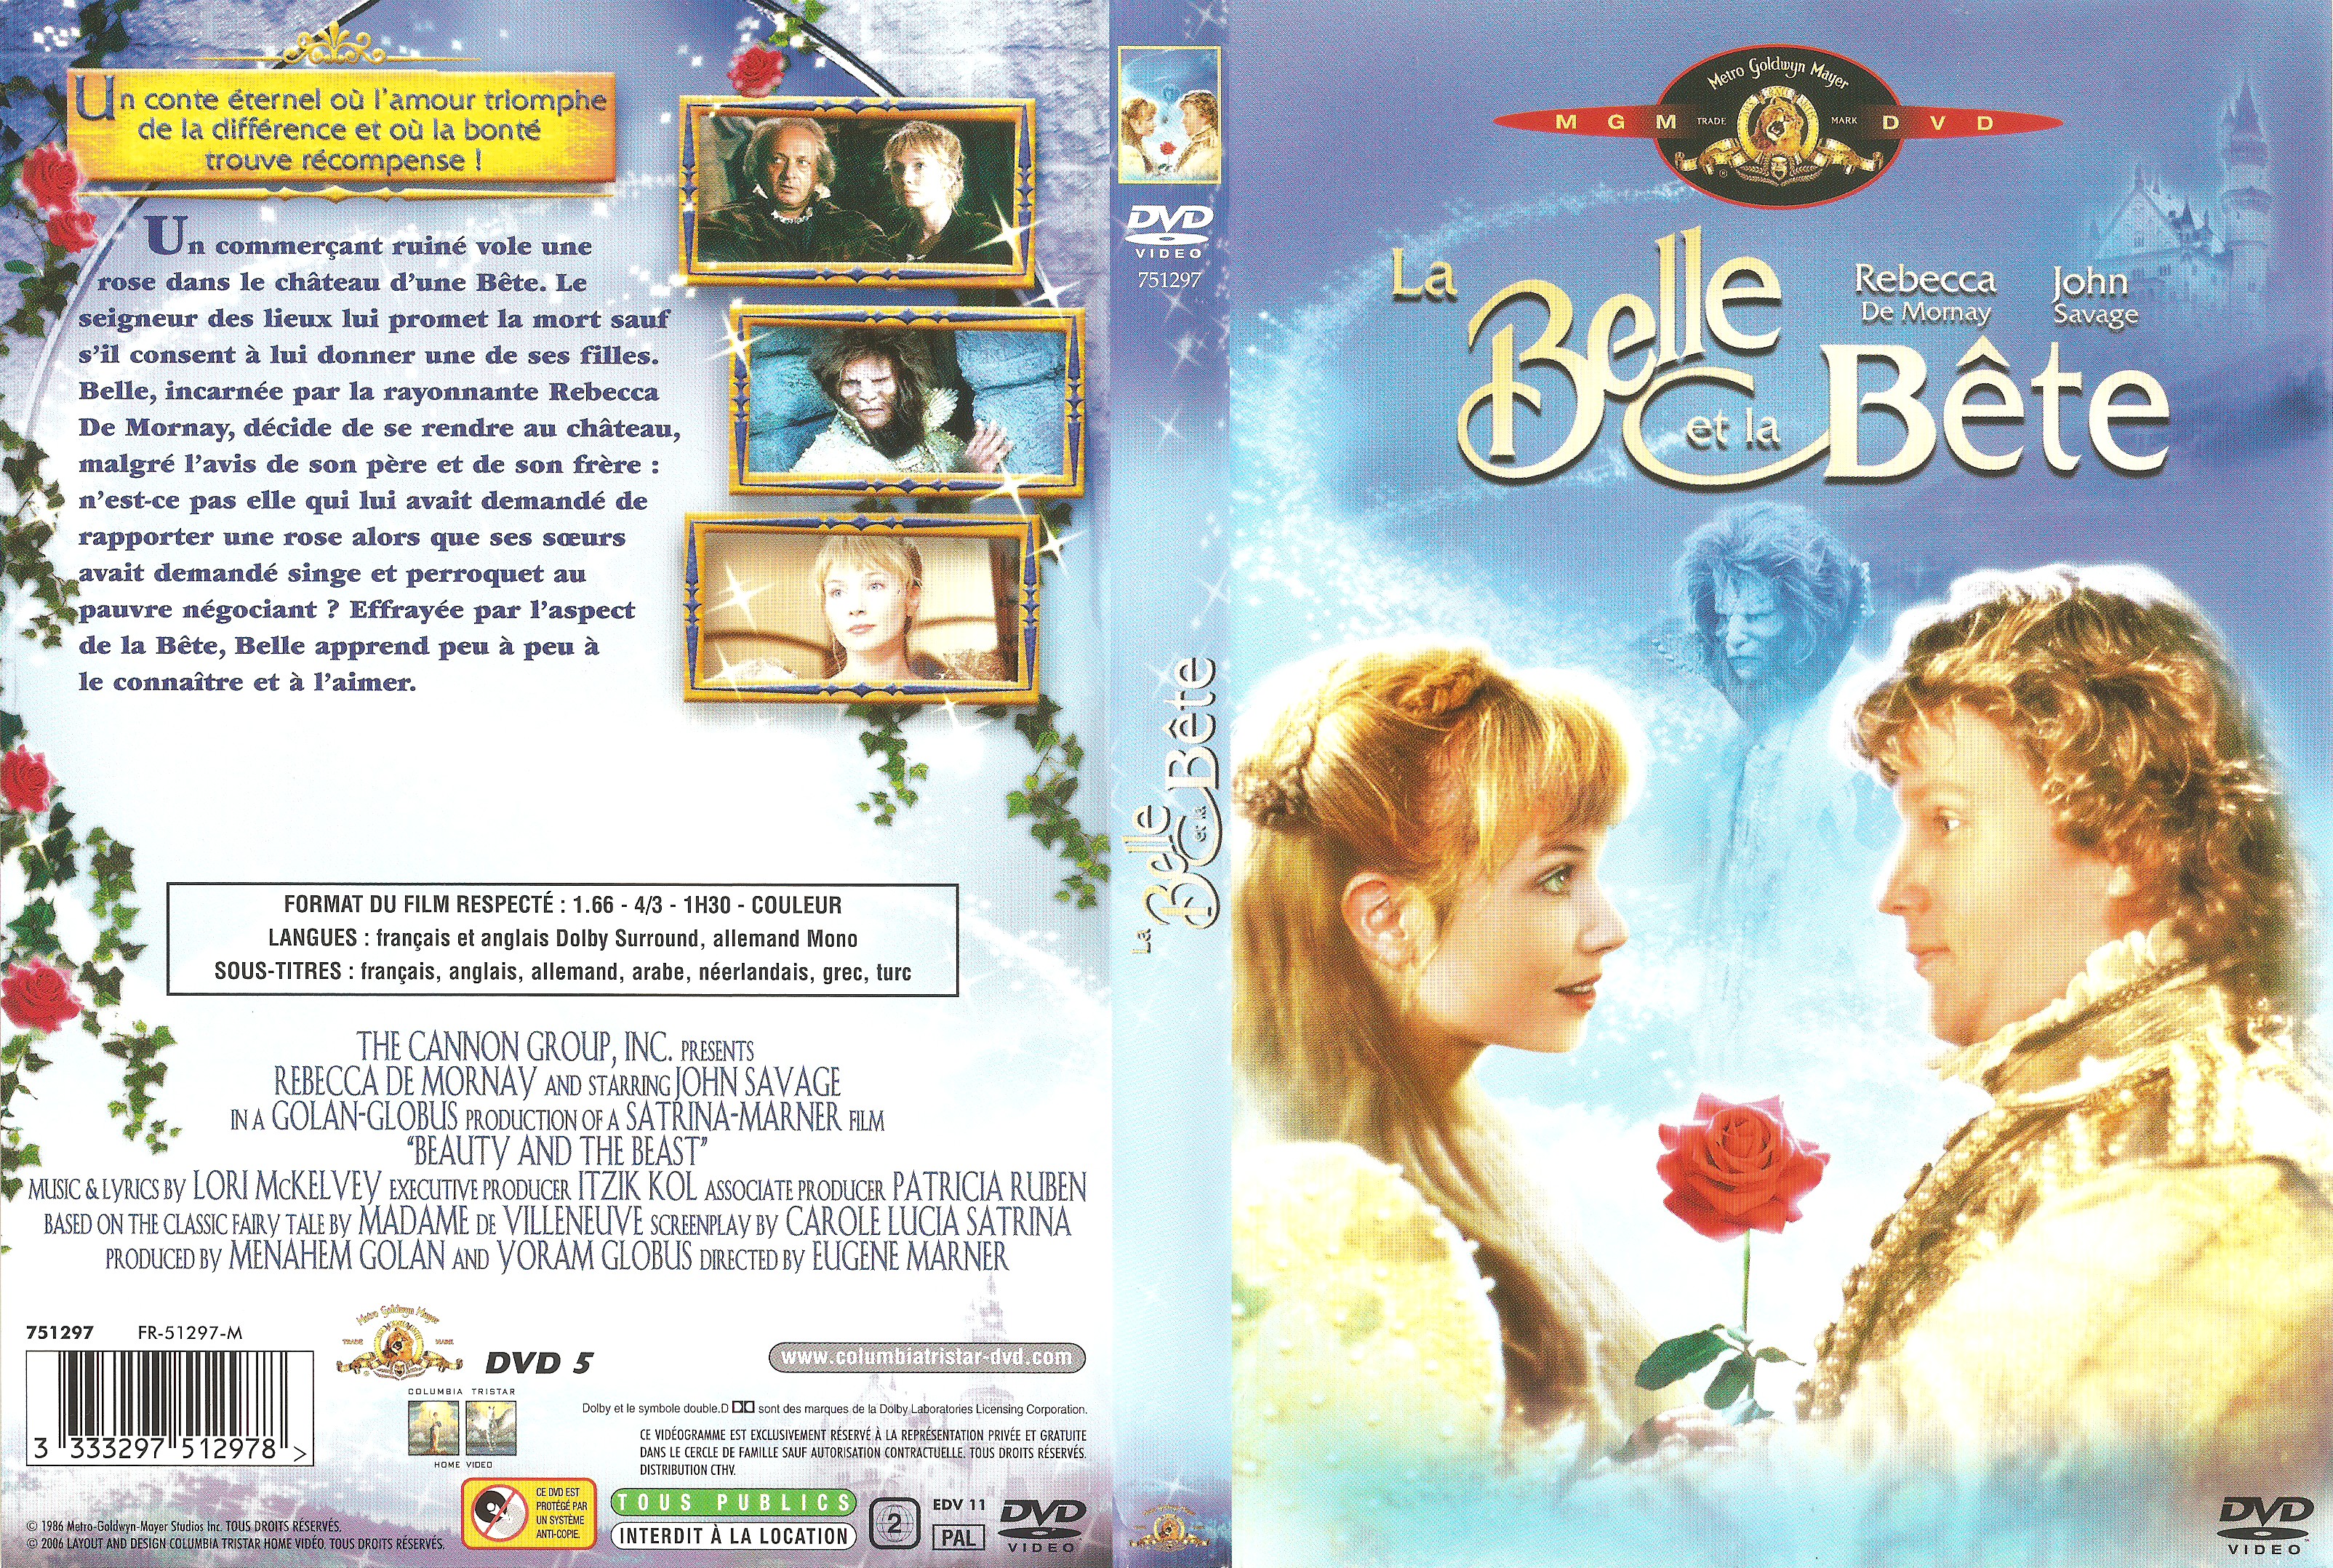 Jaquette DVD La Belle et la Bte (1986) v2